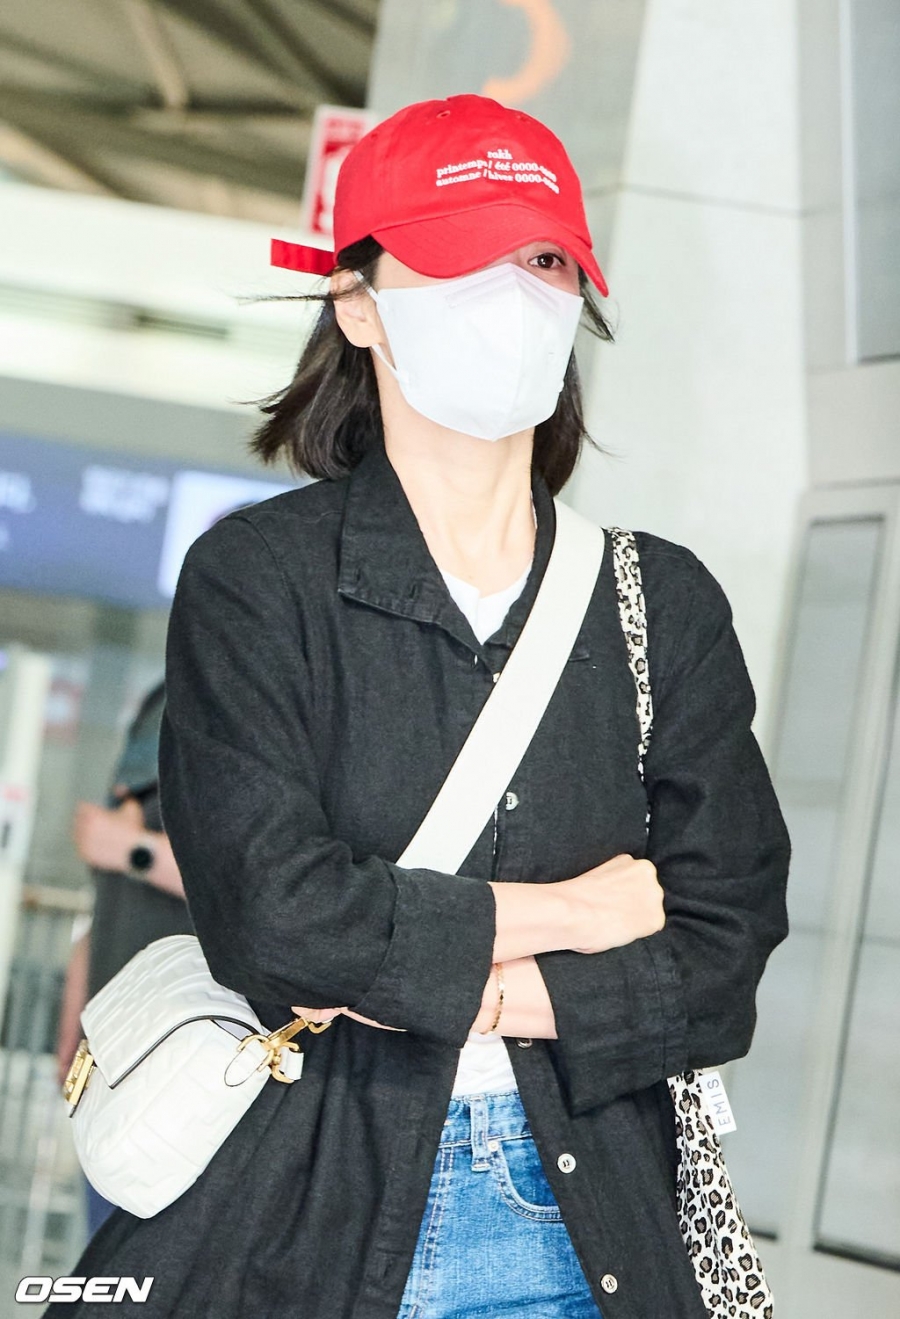 ... trong khi mũ lưỡi trai màu đỏ tôn làn da trắng của Song Hye Kyo.